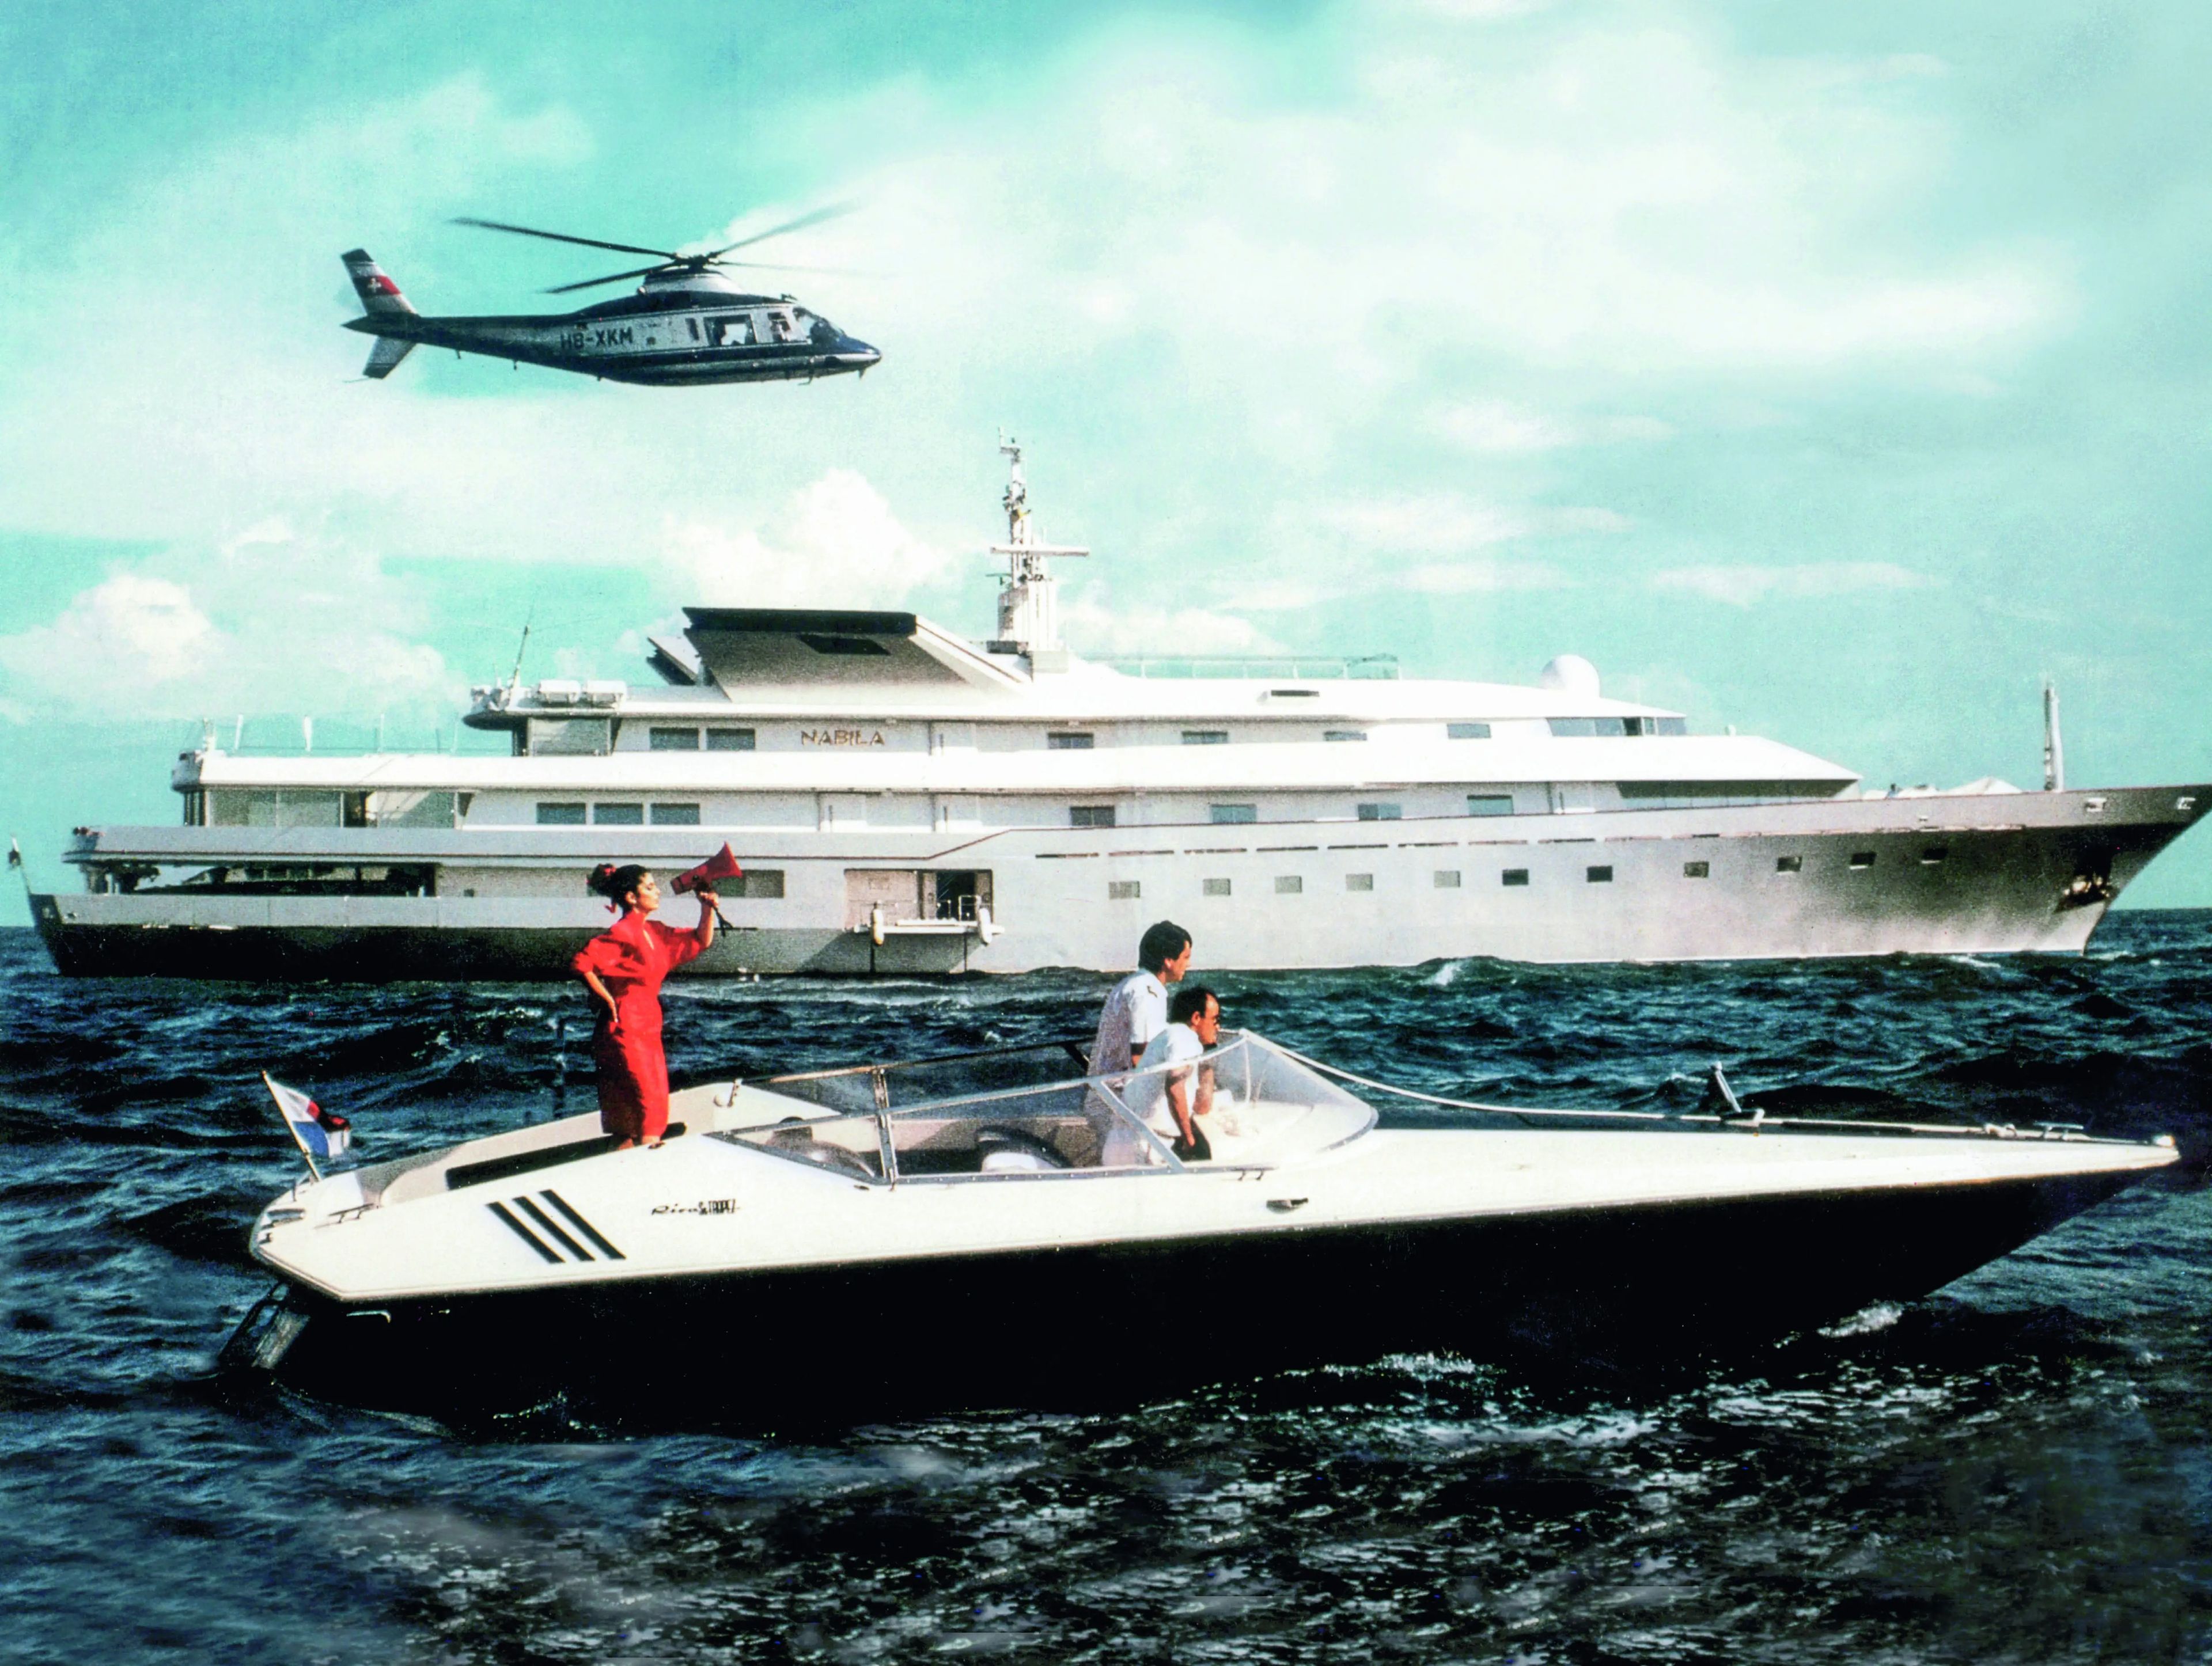 El yate Nabila, inaugurado en 1980, fue símbolo de una época más opulenta de la navegación en superyates.